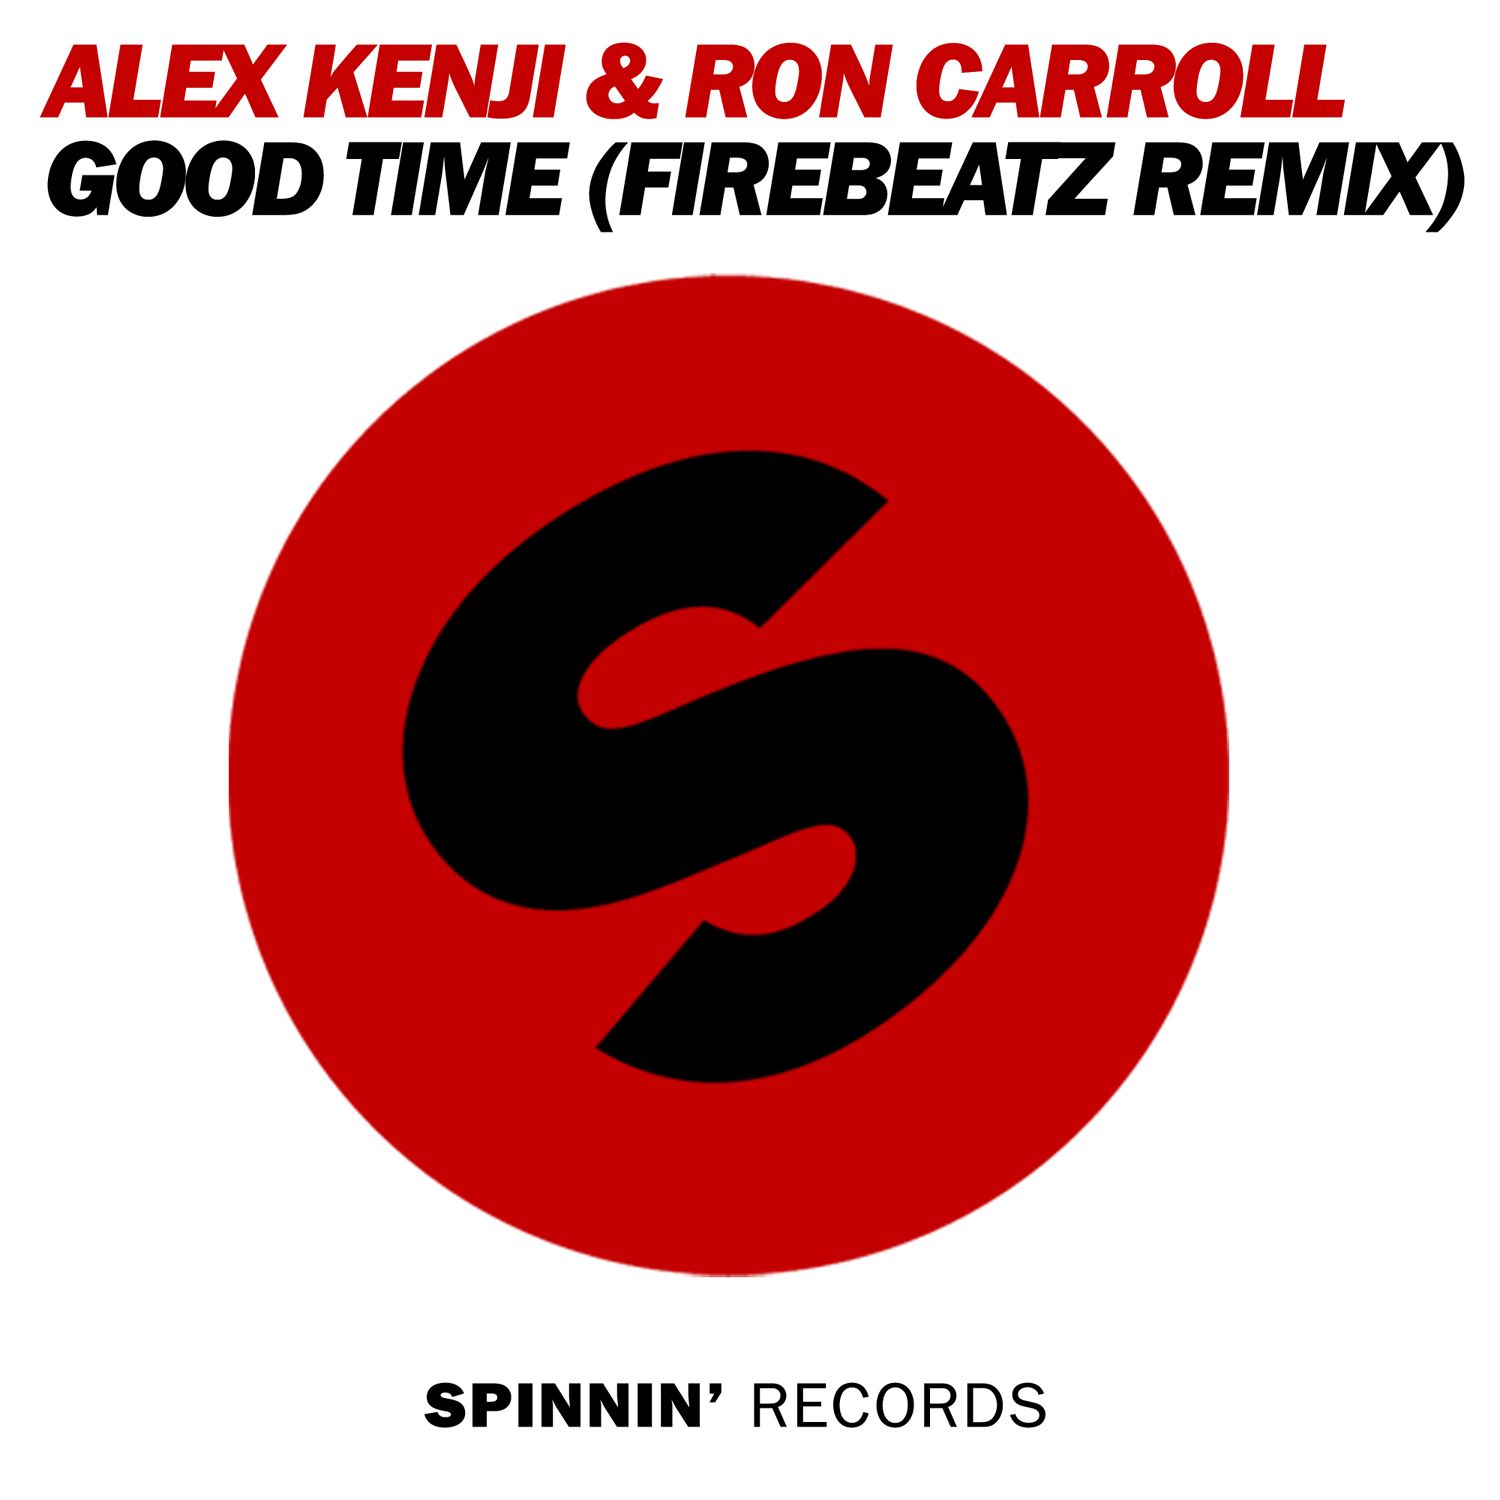 Good Time (Firebeatz Remix)